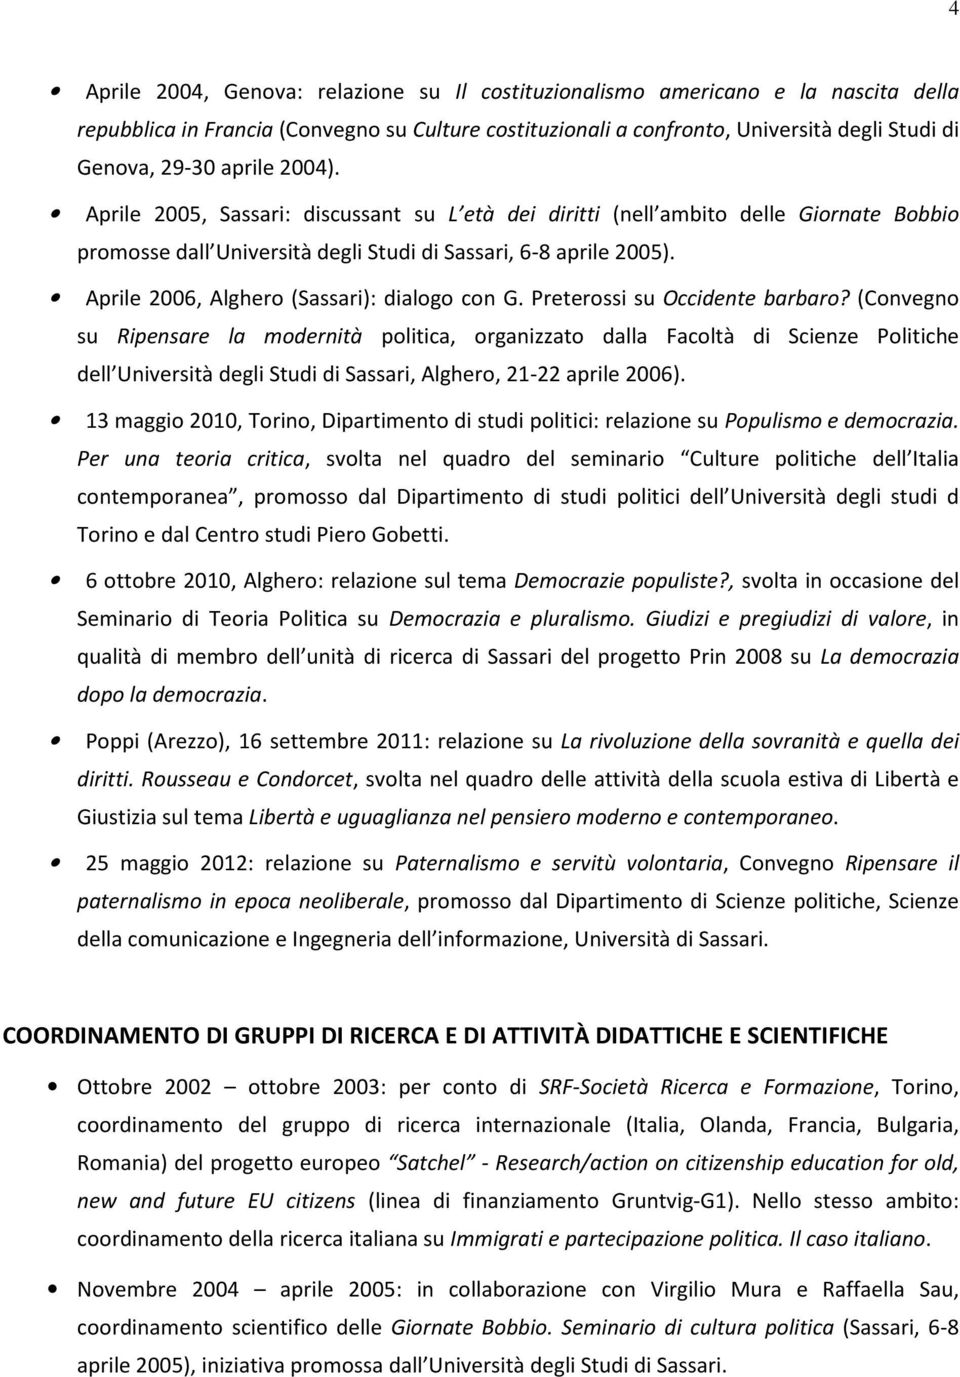 Aprile 2006, Alghero (Sassari): dialogo con G. Preterossi su Occidente barbaro?